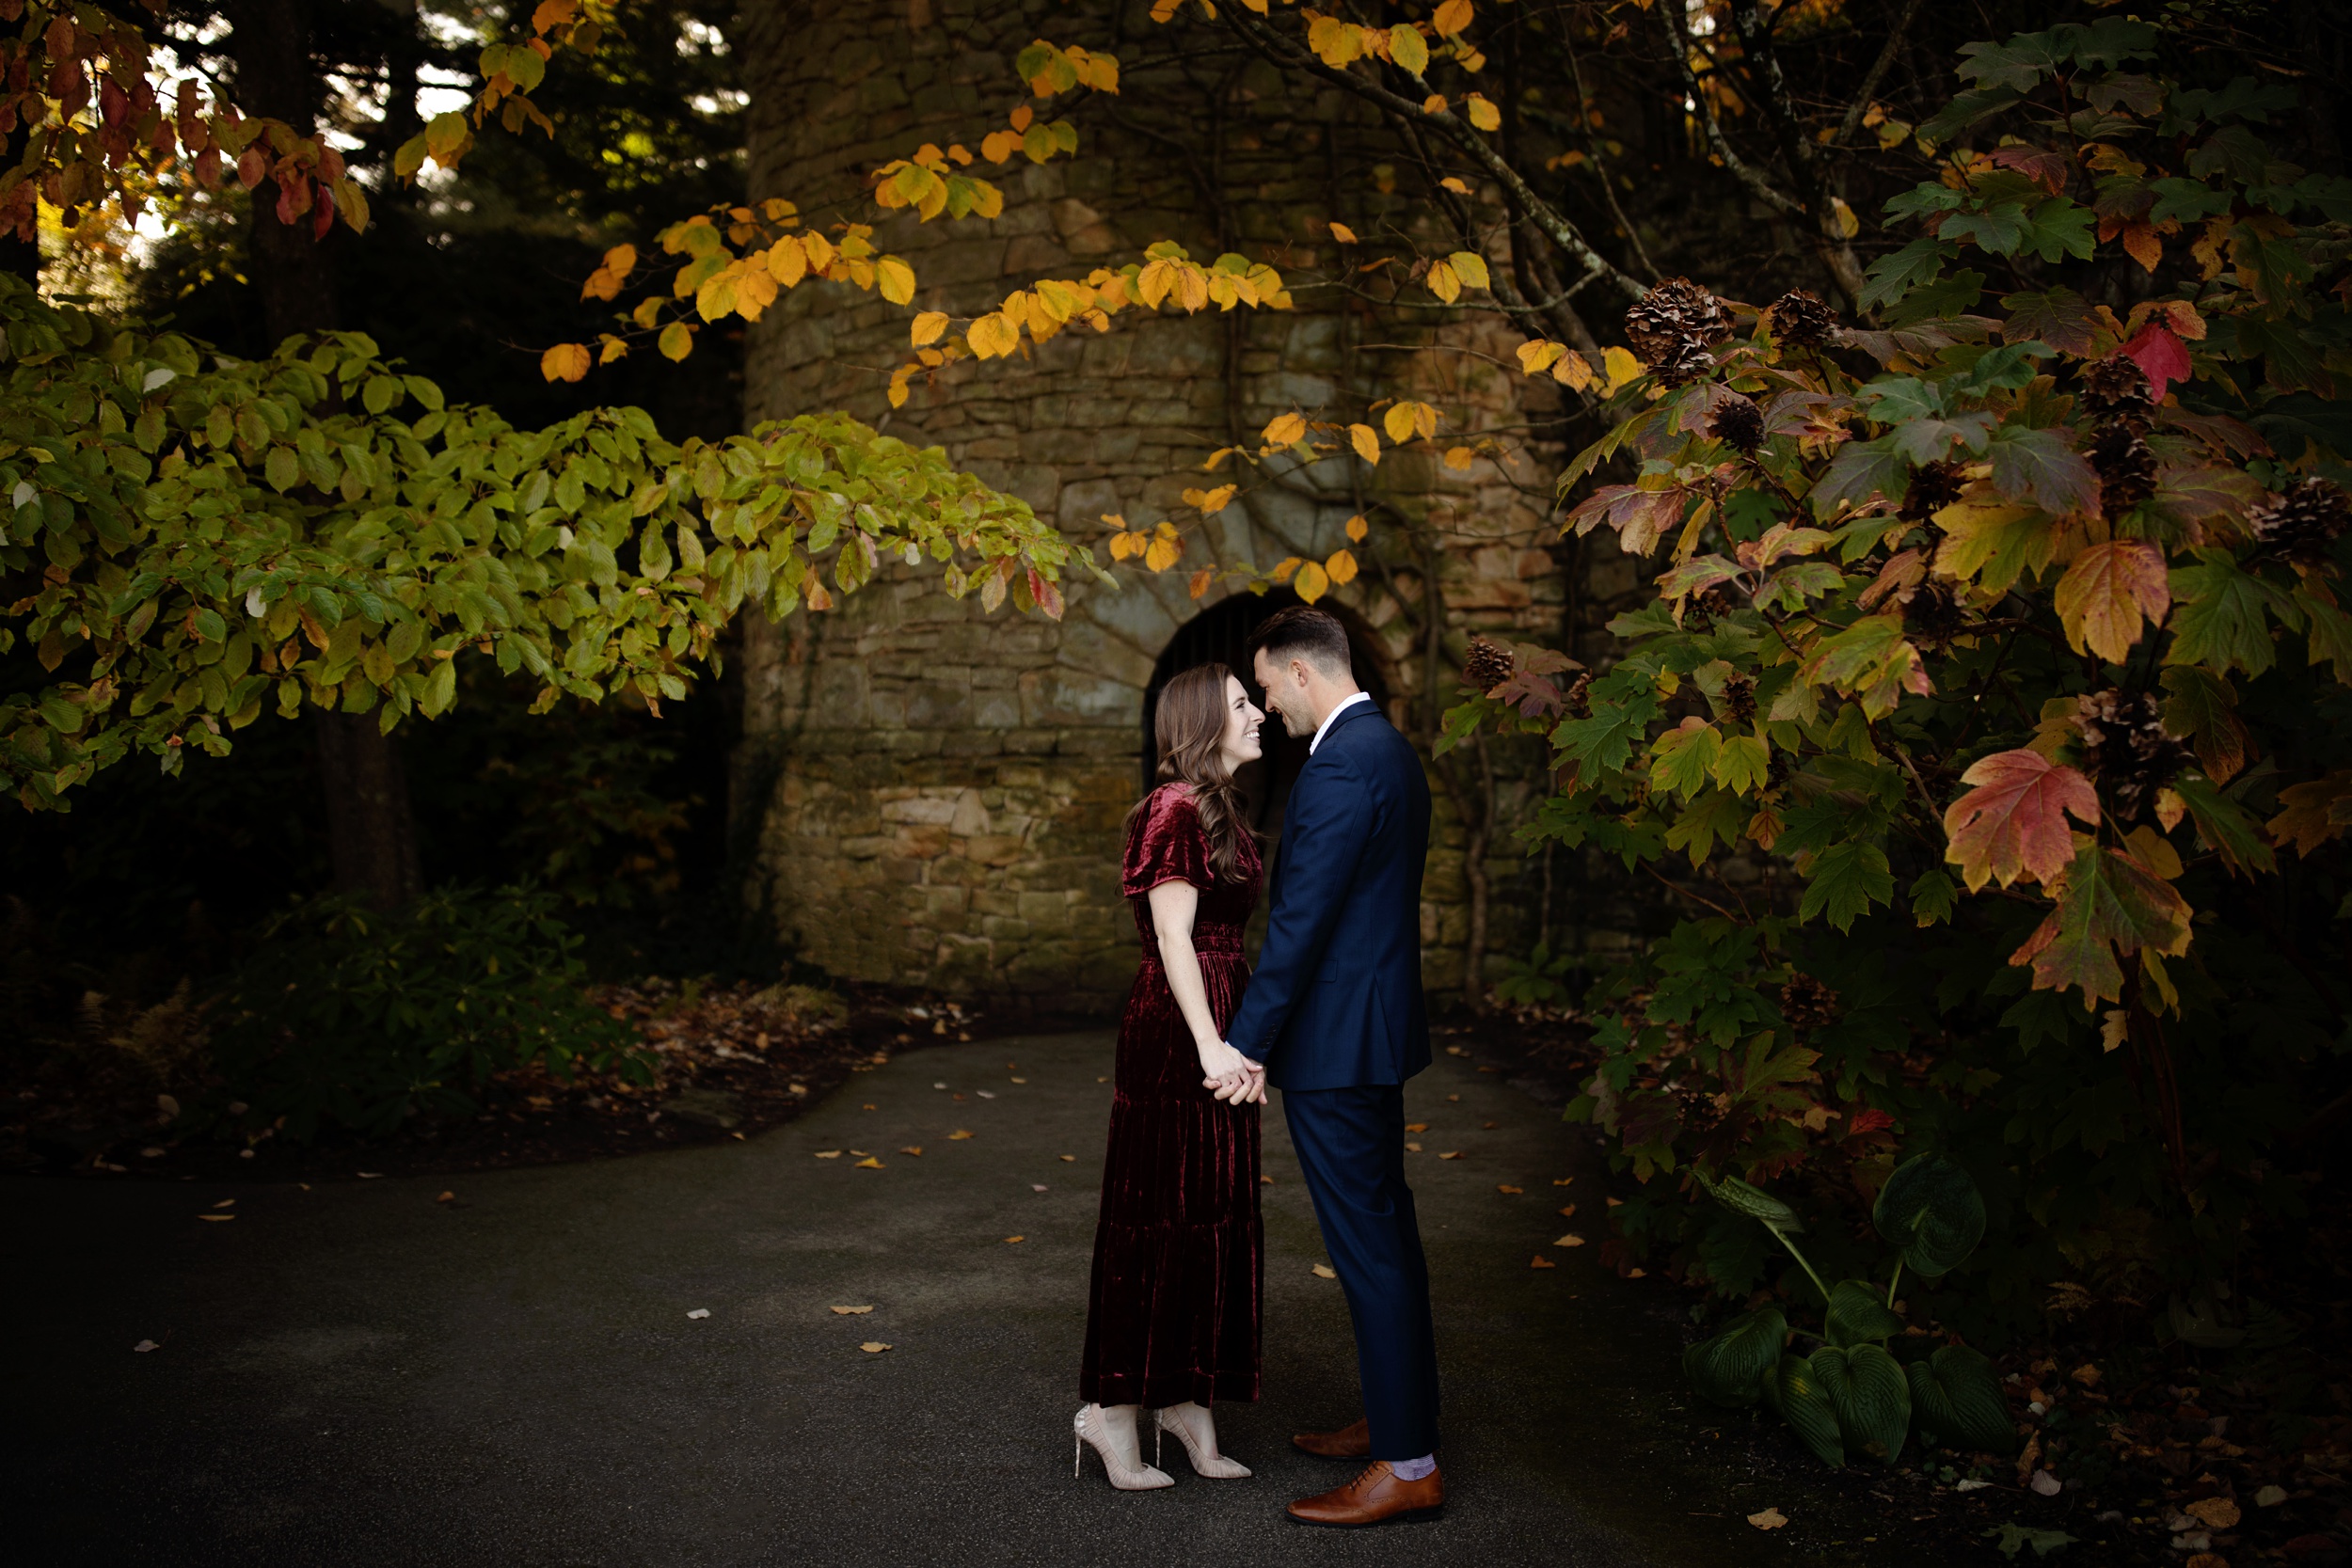 Longwood Gardens Engagement Photos, captured by Philadelphia Wedding and Engagement Photographer Janae Rose Photography